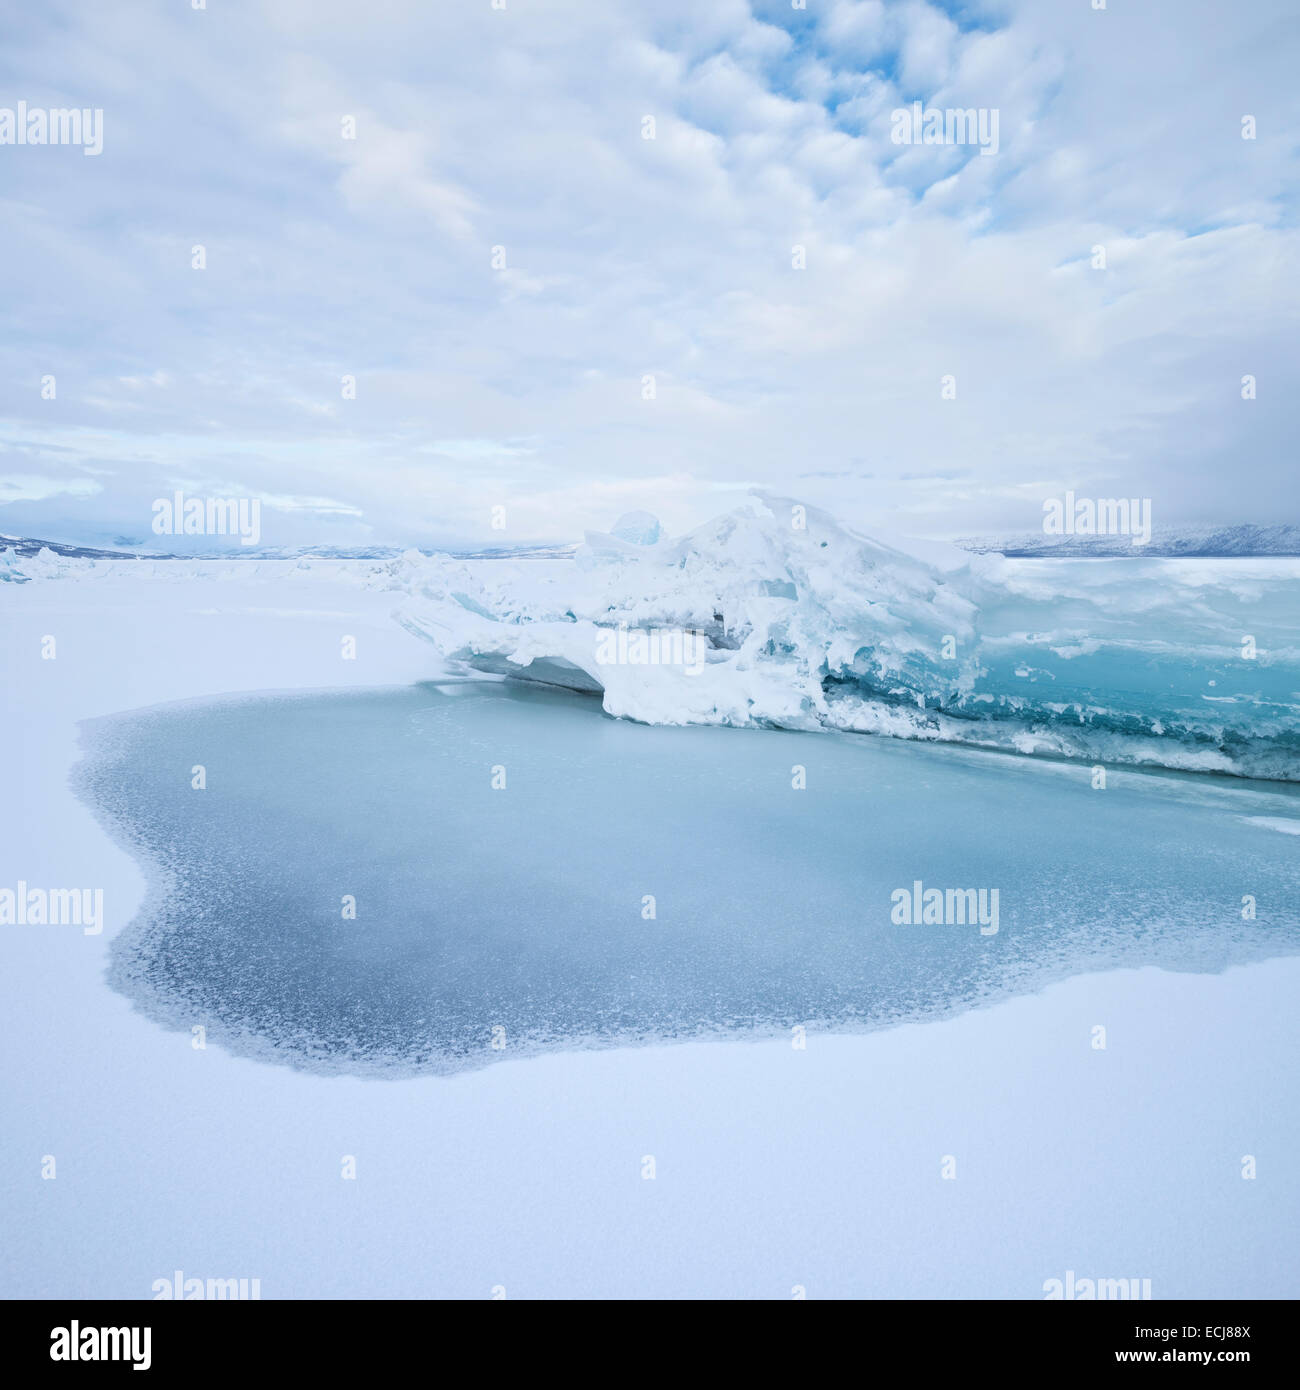 Ice rift on frozen lake Torneträsk in winter, Abisko national park, Lapland, Sweden Stock Photo